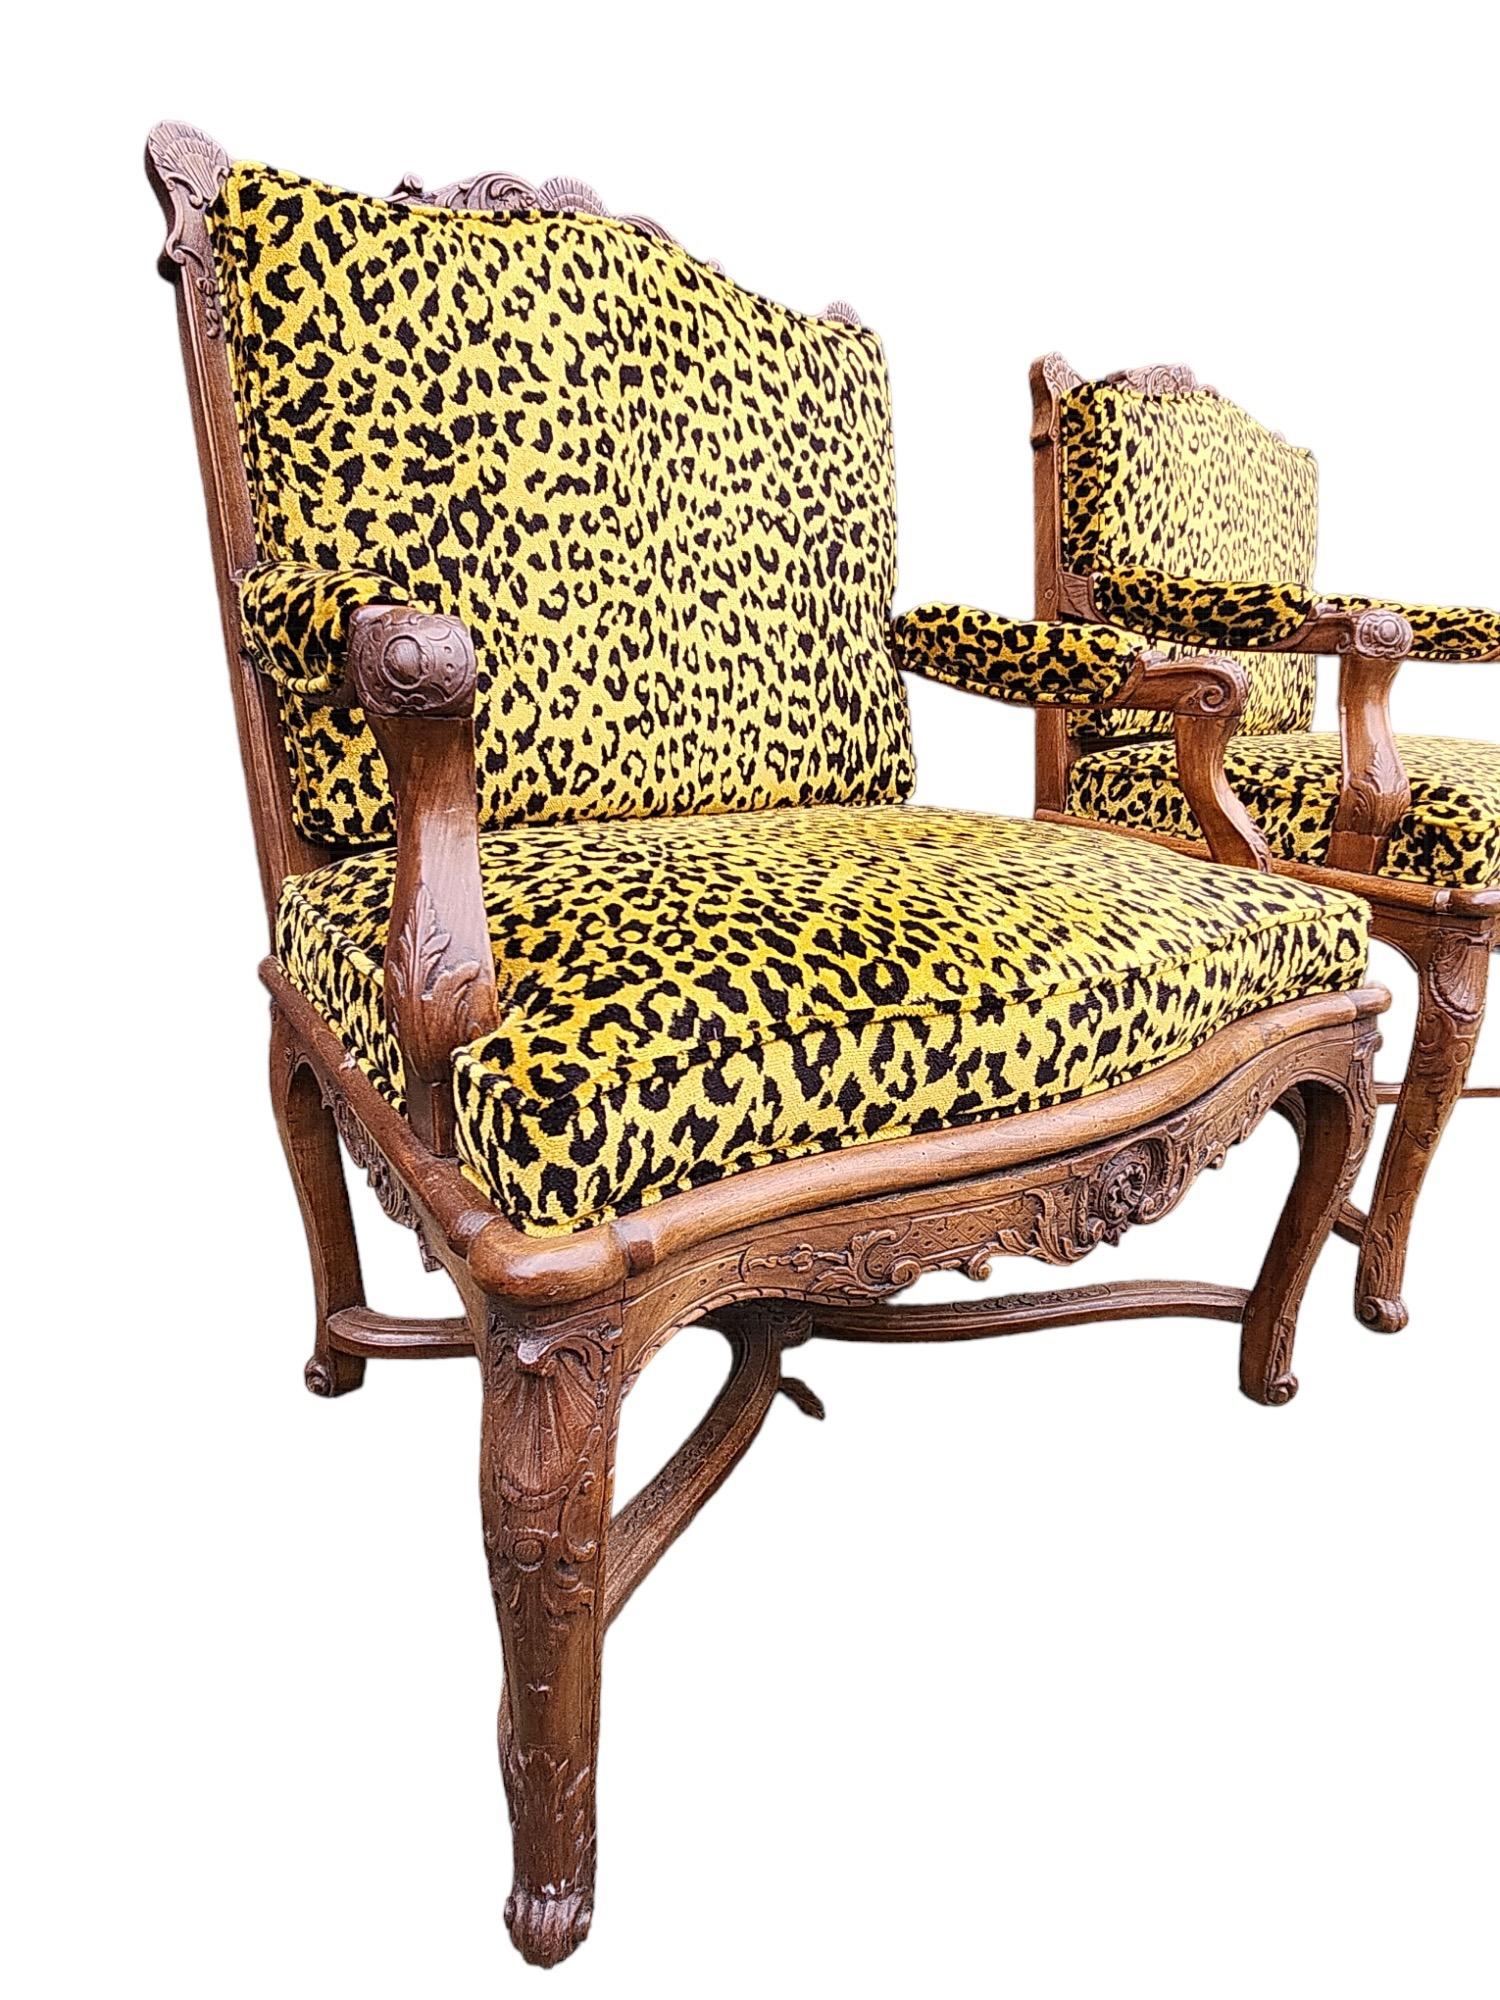 Neu gepolstert mit Cheetah-Stoff.  Der zweite Stuhl hat etwas andere Abmessungen:  B 27